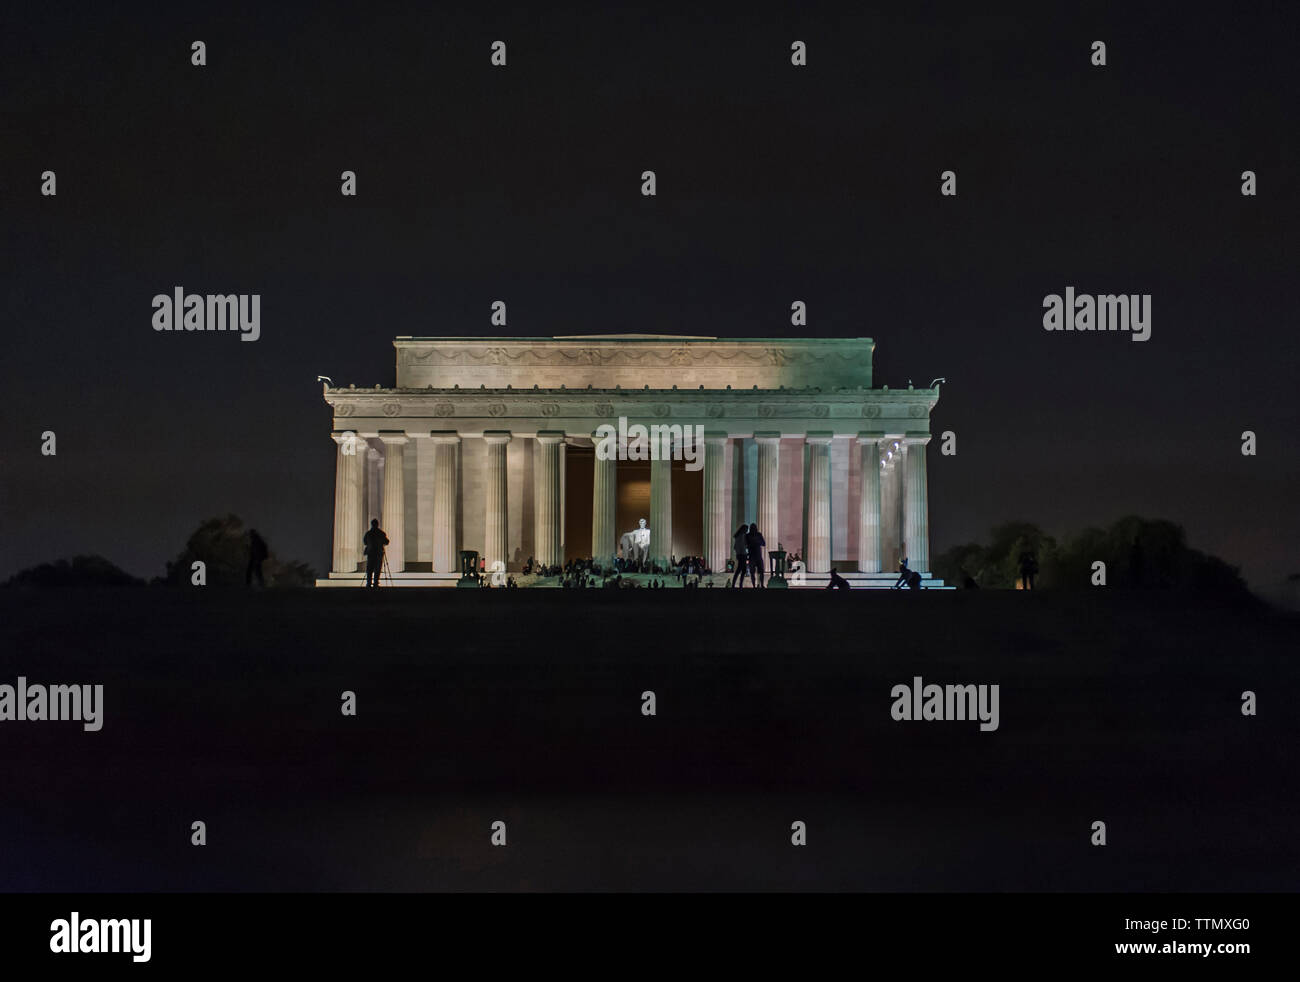 Personas en el Lincoln Memorial silueta contra el cielo claro en la noche Foto de stock